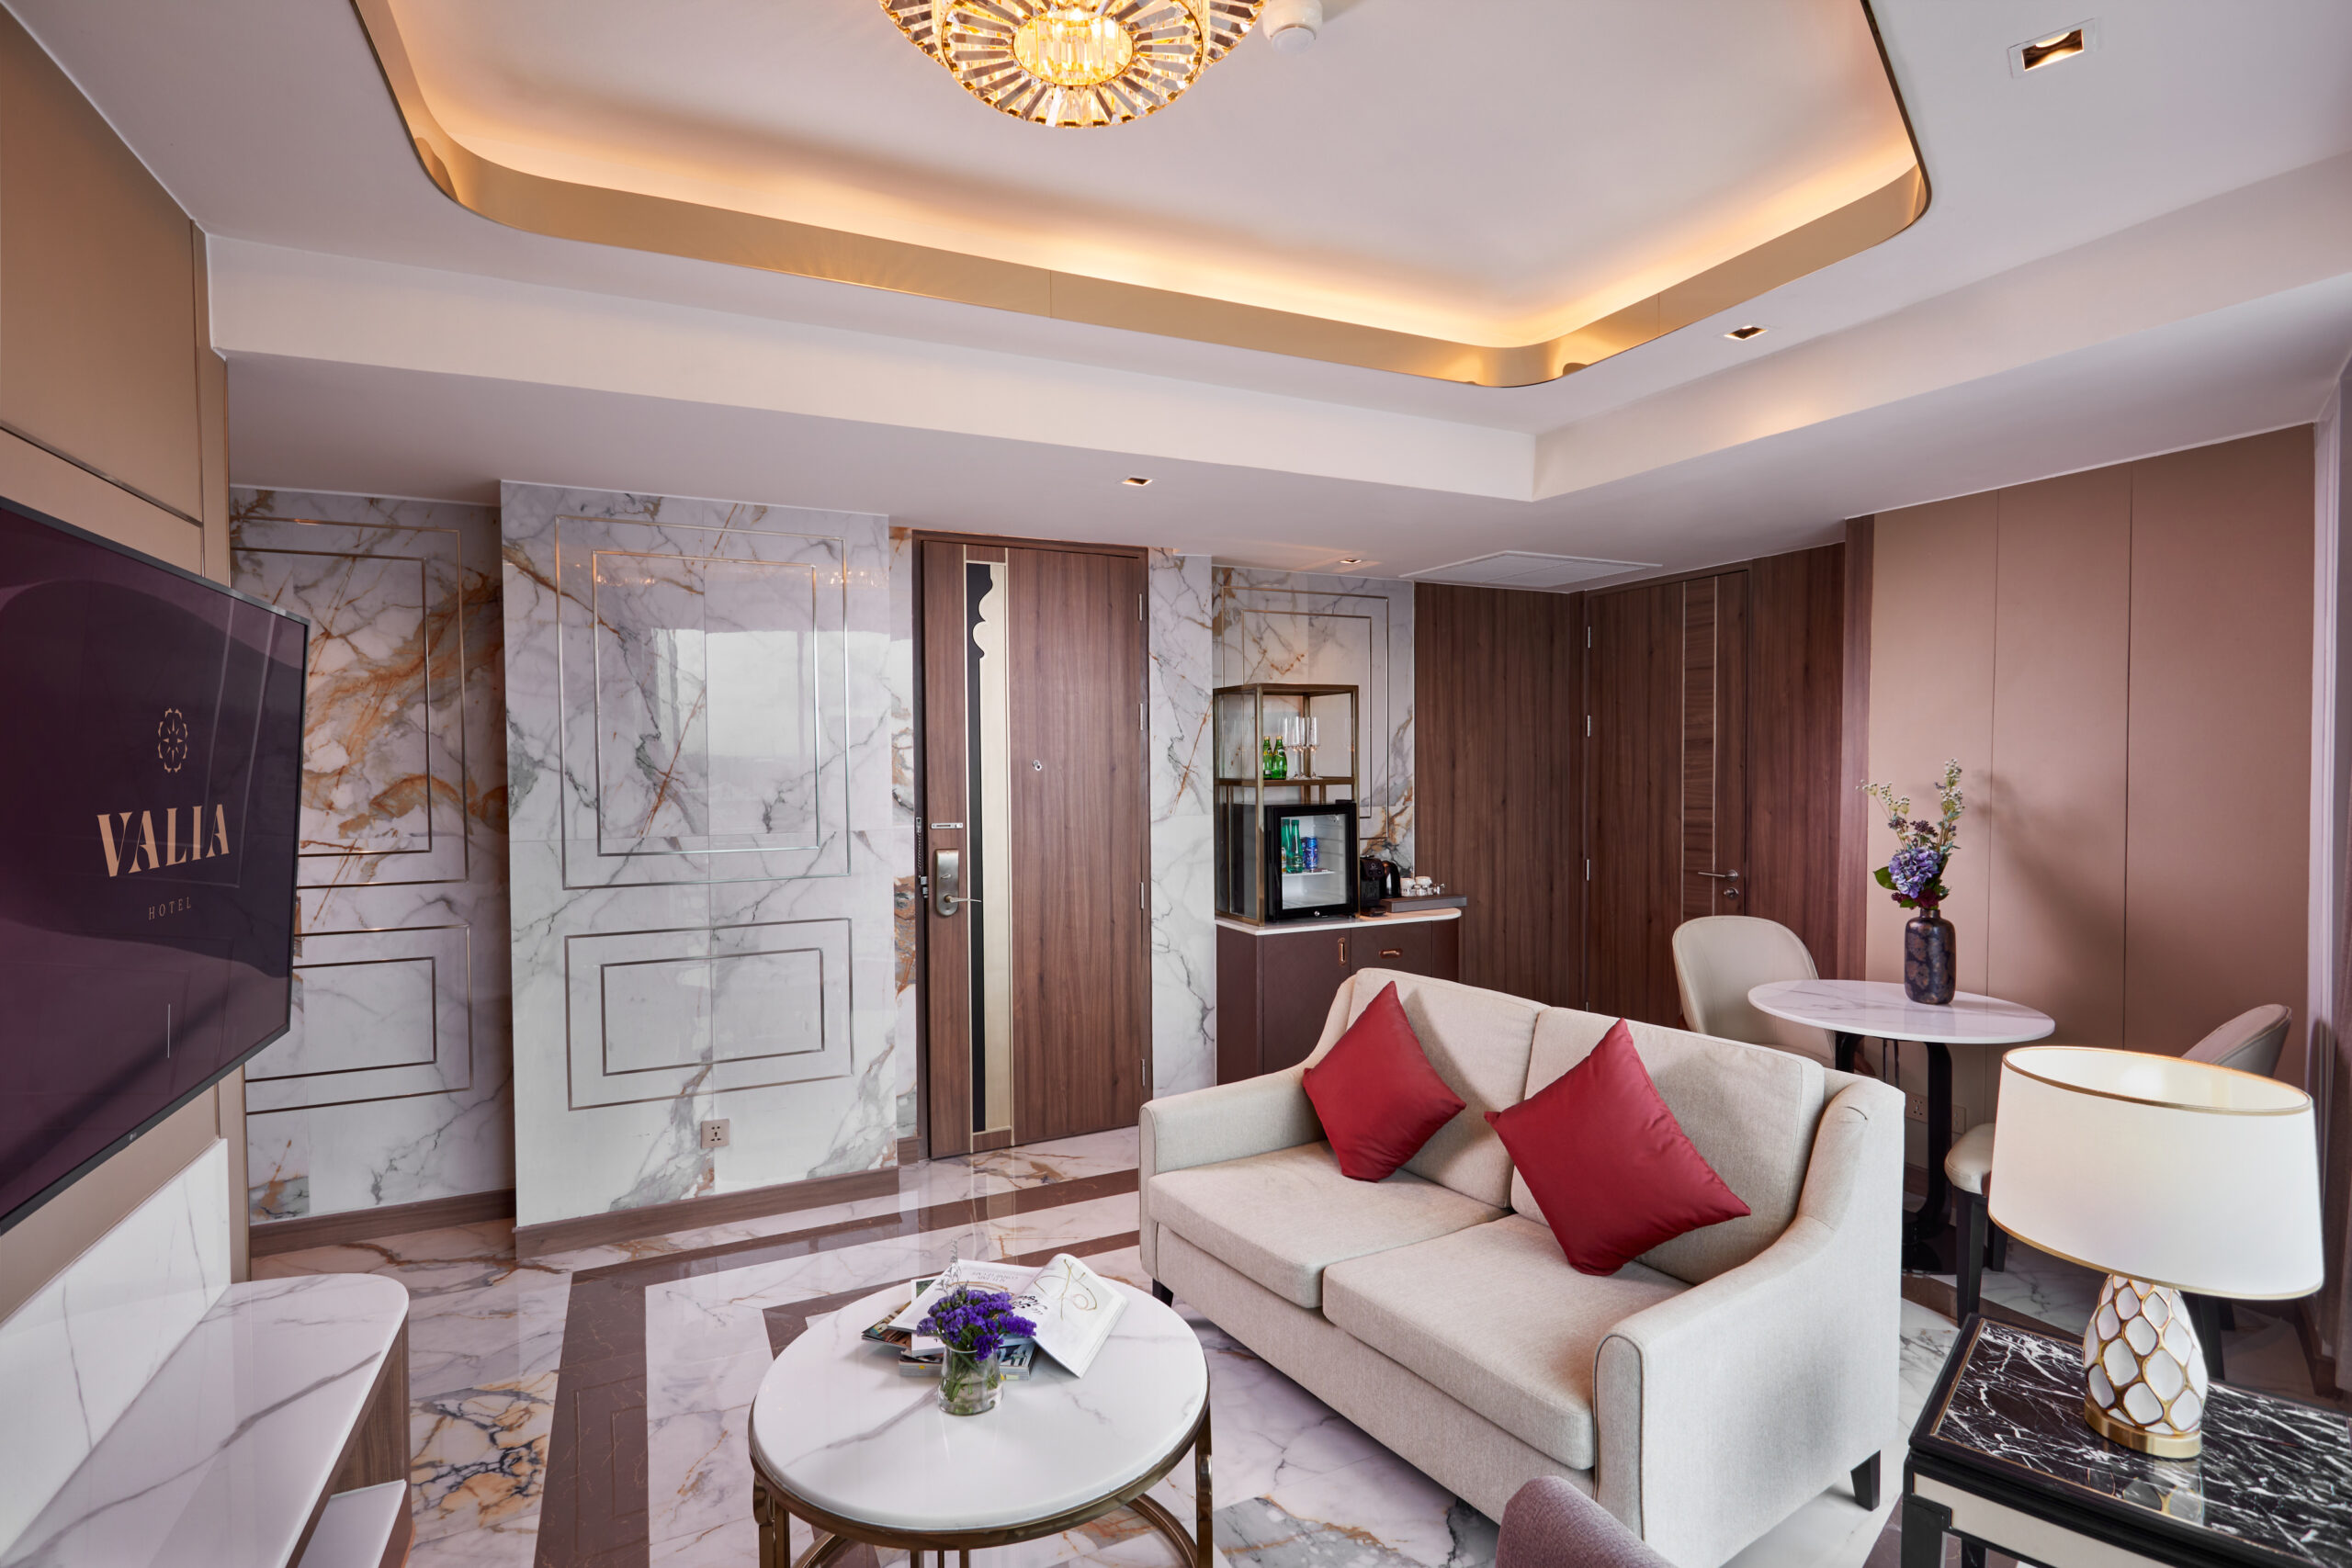 Valia Hotel Bangkok - Suites room